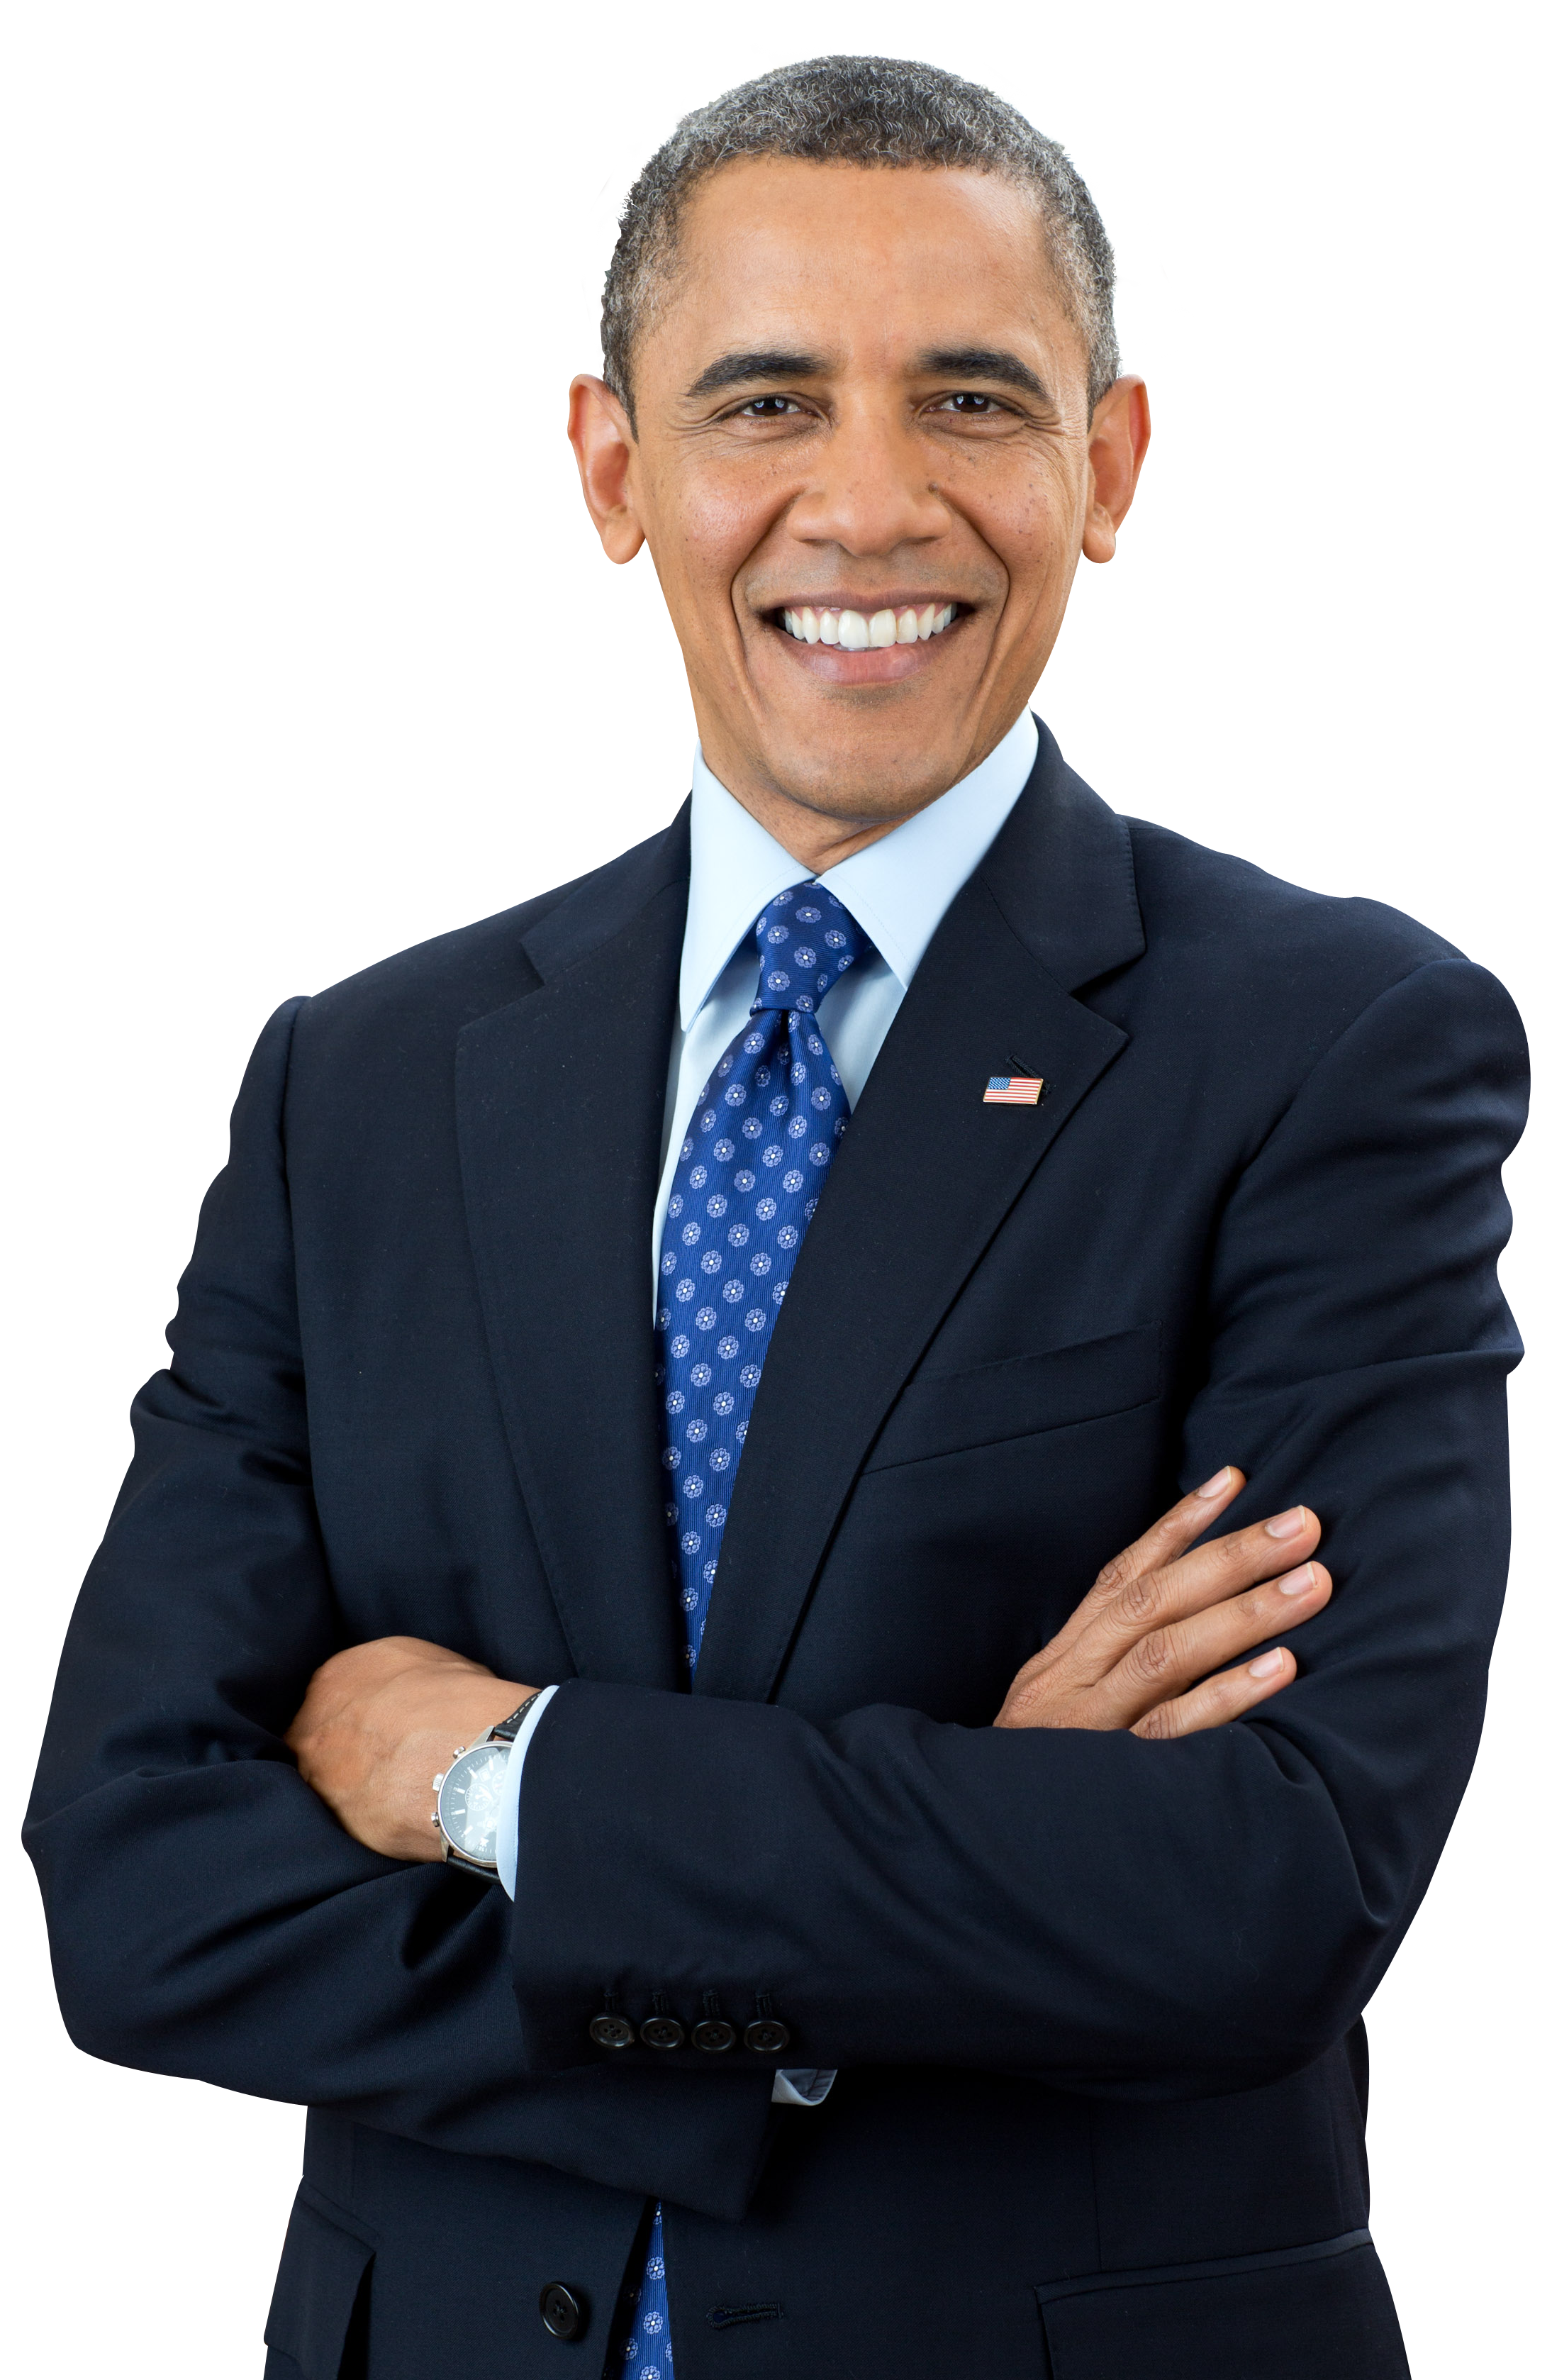 Barack Obama Transparent - KibrisPDR